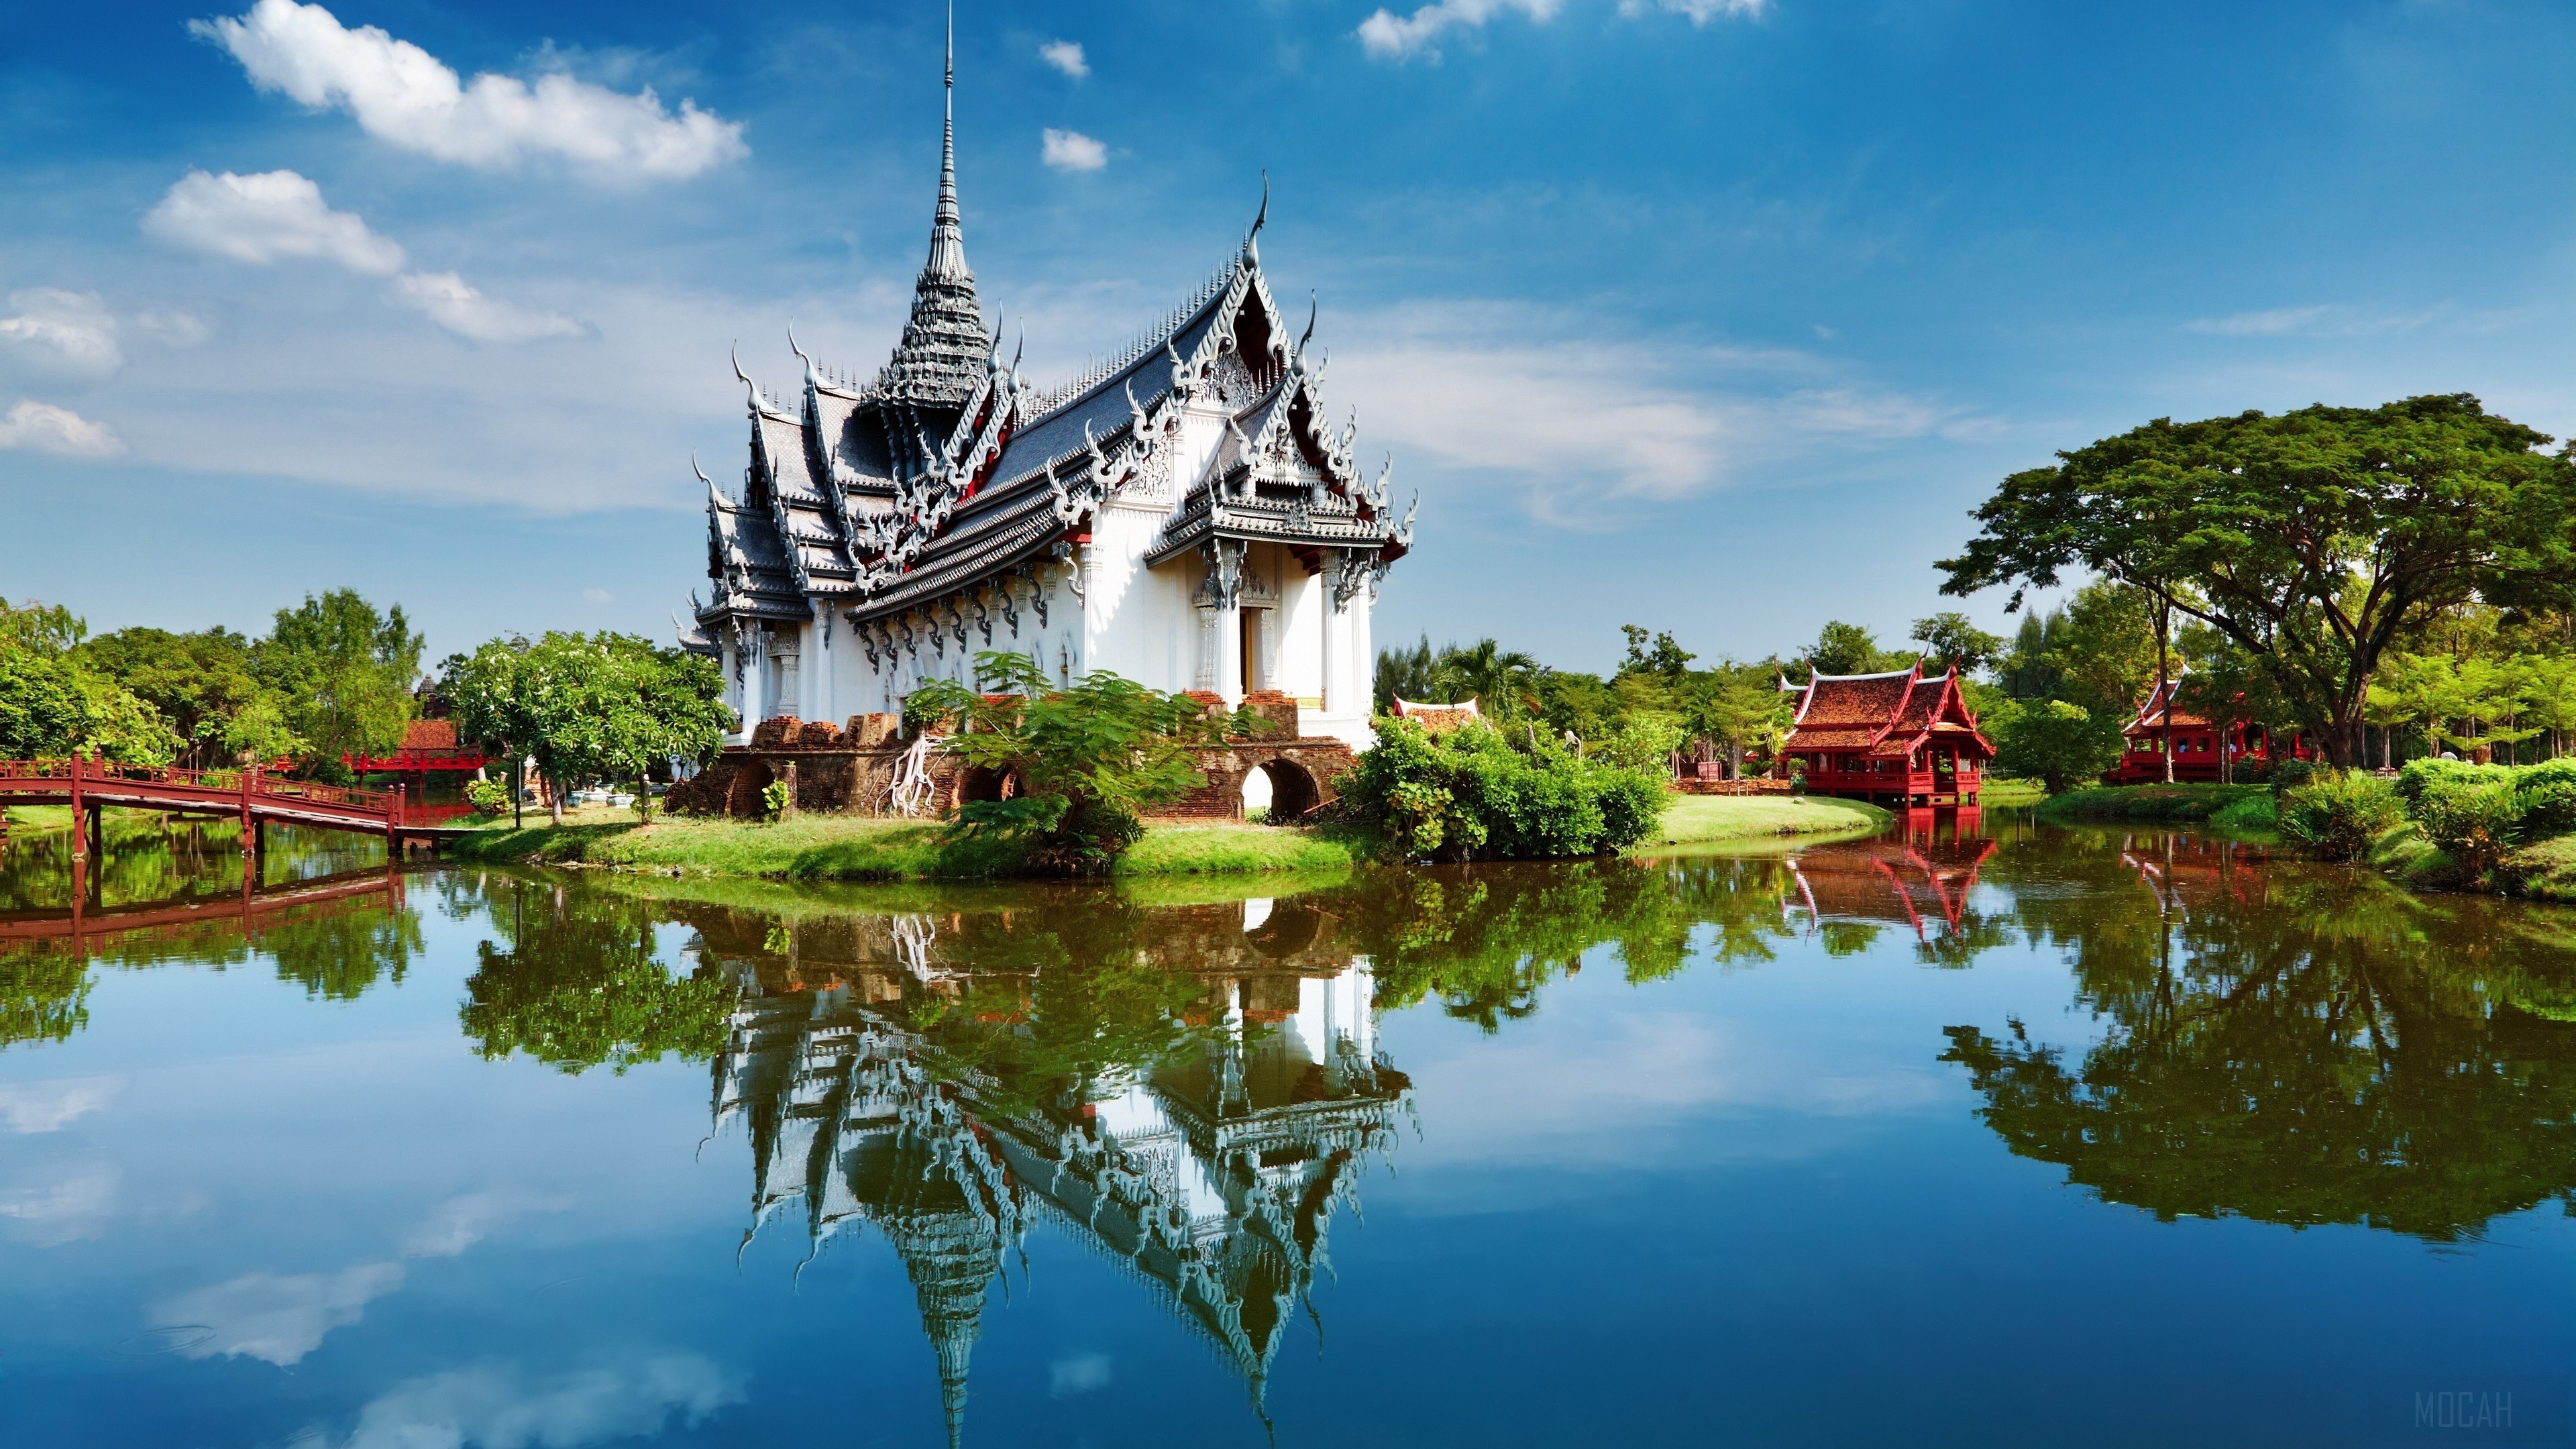 Fond d'écran 4k - Thaïlande Découvrez toutes les autres photos hd de pays 